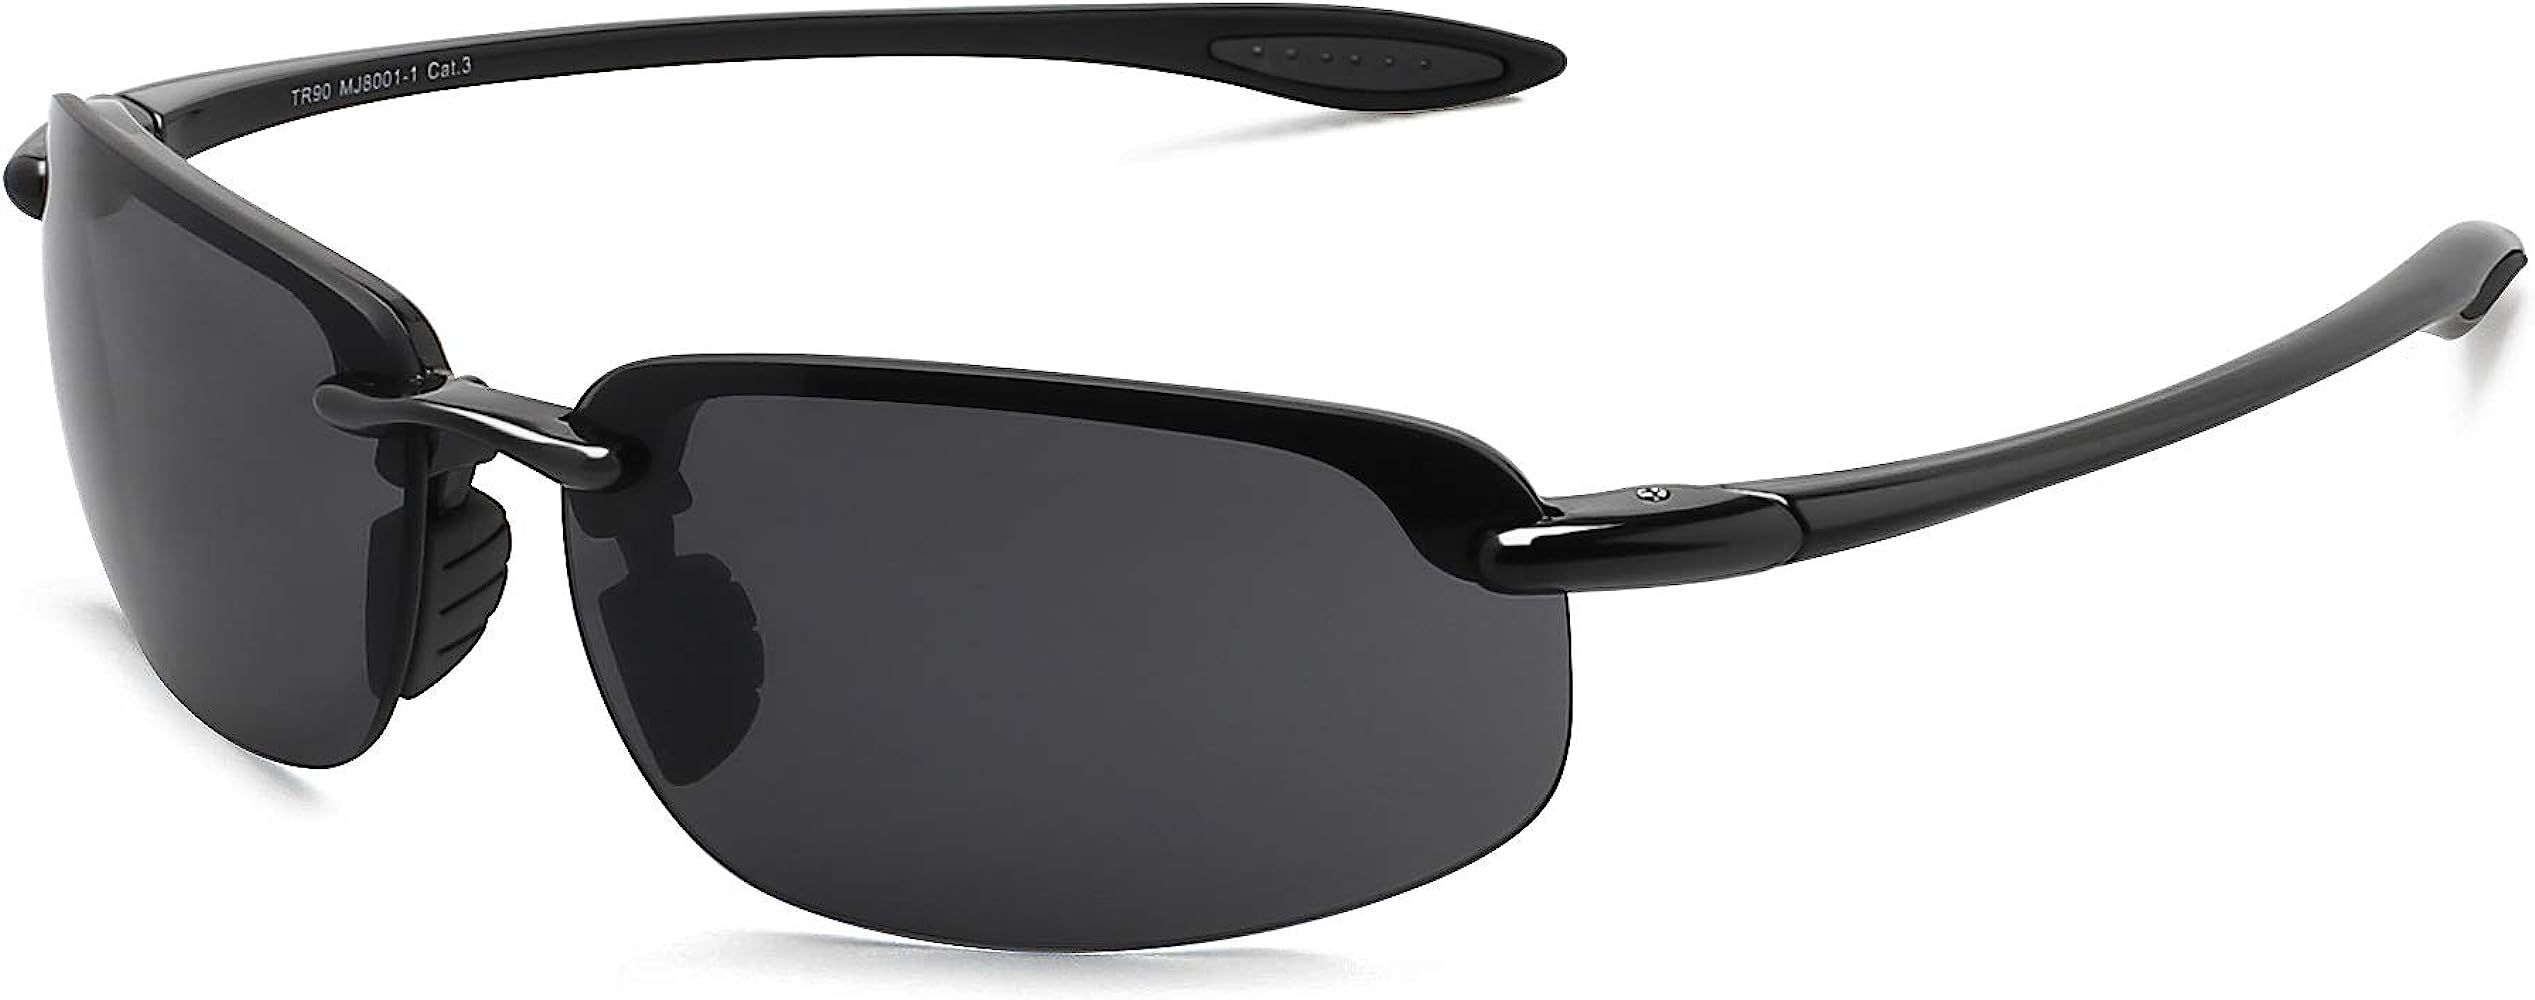 JULI Sports Sunglasses for Men Women Tr90 Rimless Frame for Running Fishing Baseball Driving MJ80... | Amazon (US)